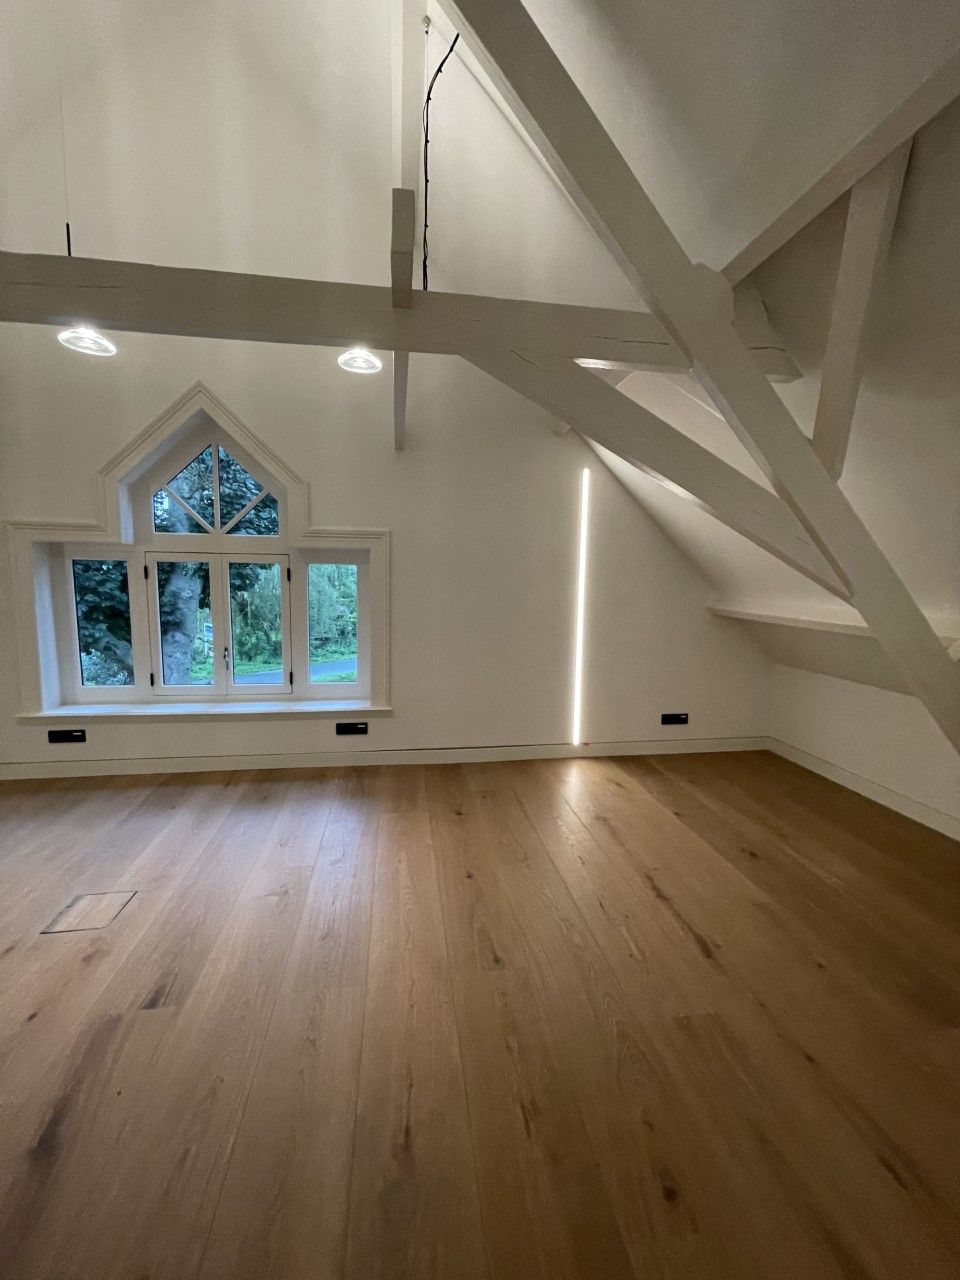 Een lege kamer met een houten vloer en een groot raam lampen aan het plafond